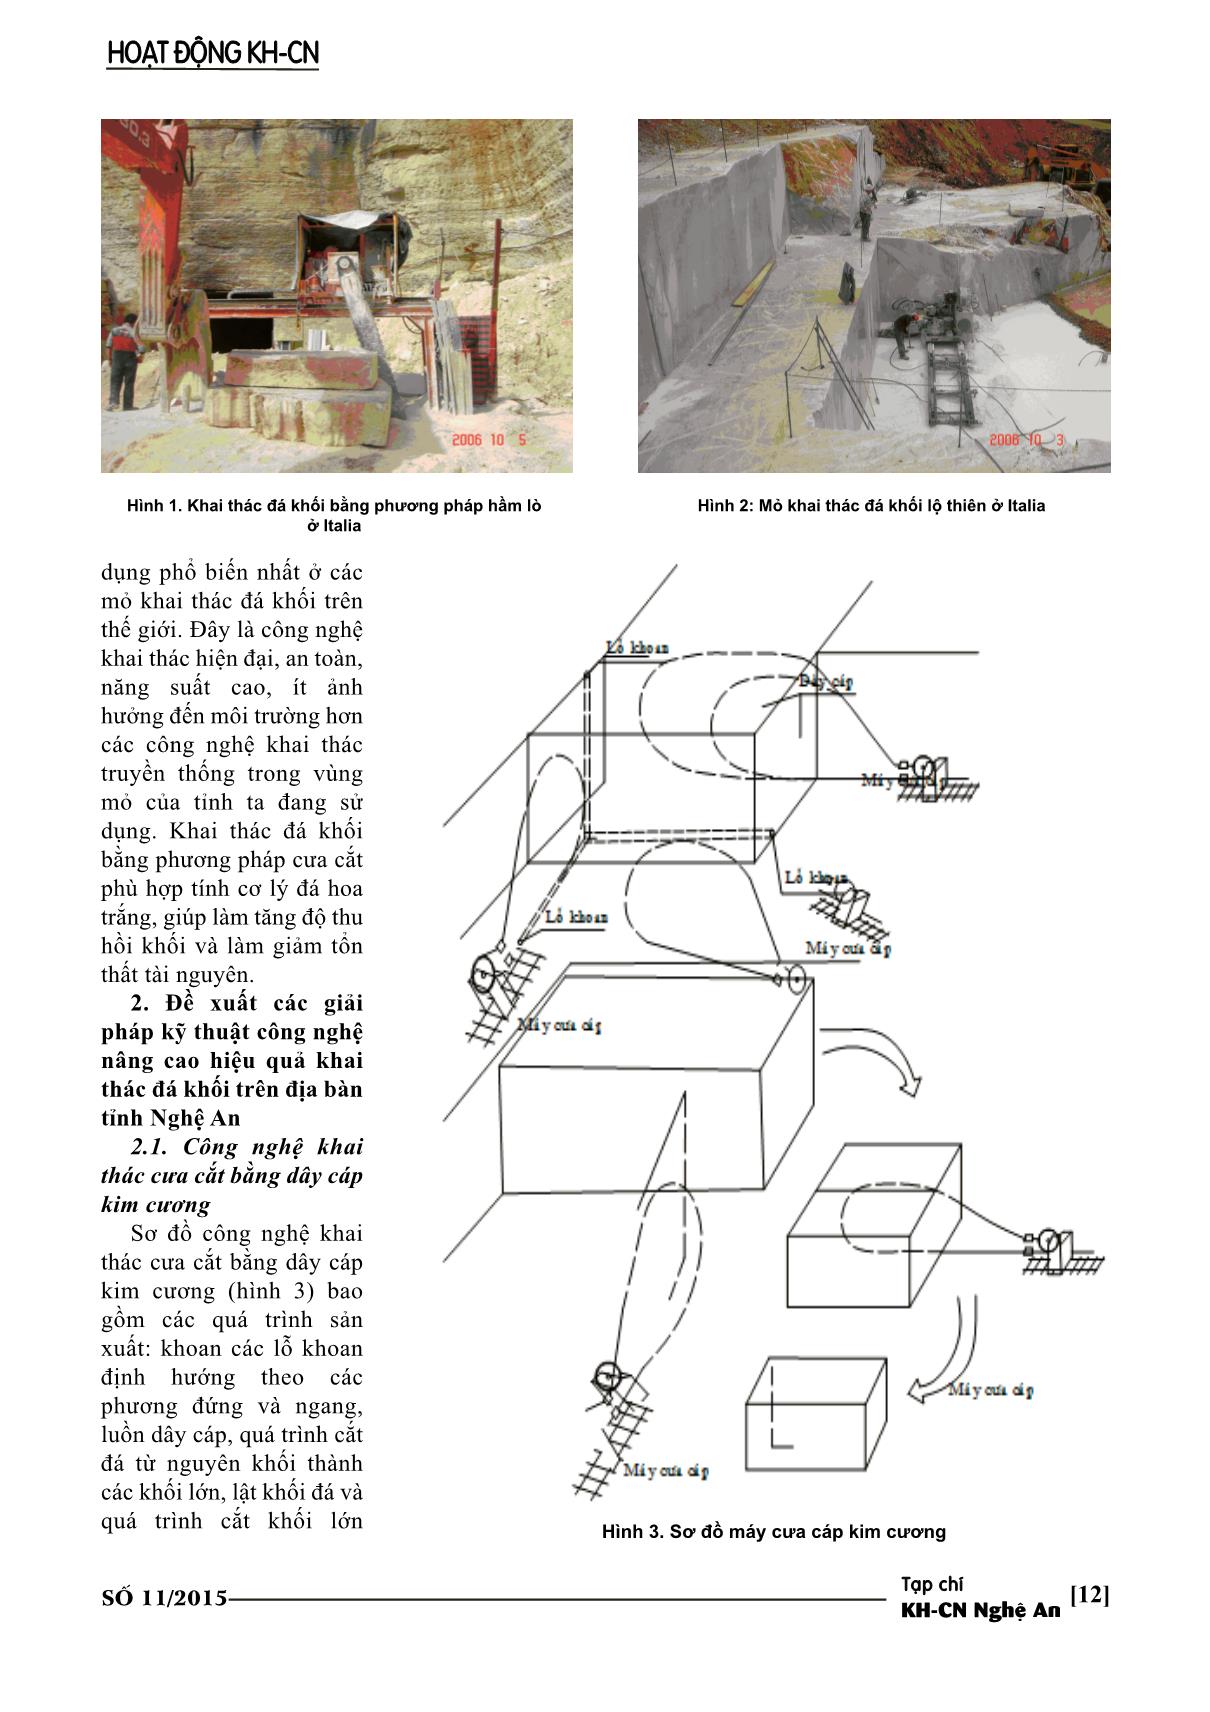 Giải pháp kỹ thuật công nghệ nâng cao hiệu quả khai thác đá khối ở Nghệ An trang 2